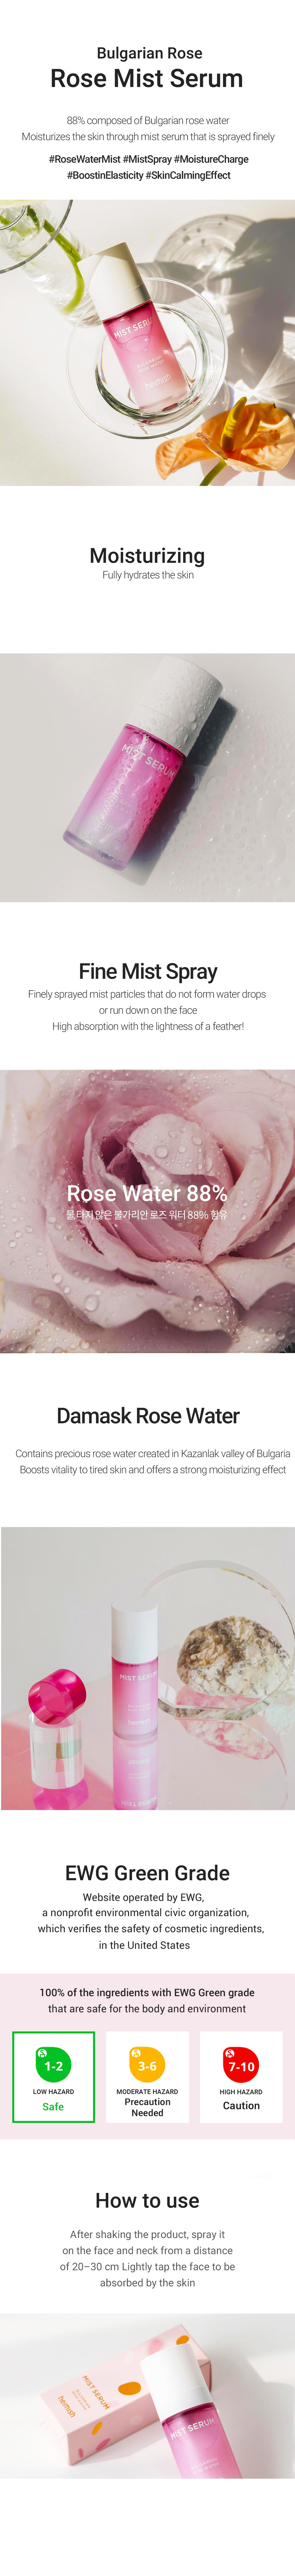 HEIMISH - Bulgarian rose Mist Serum 55ml ( Nemlendirici ve Yenileyici Sprey Formunda Serum ) Kore Kozmetik ve Cilt Bakım Ürünleri Türkiye K-Beauty  - Heimish Cilt Bakım Ürünleri Türkiye Satış